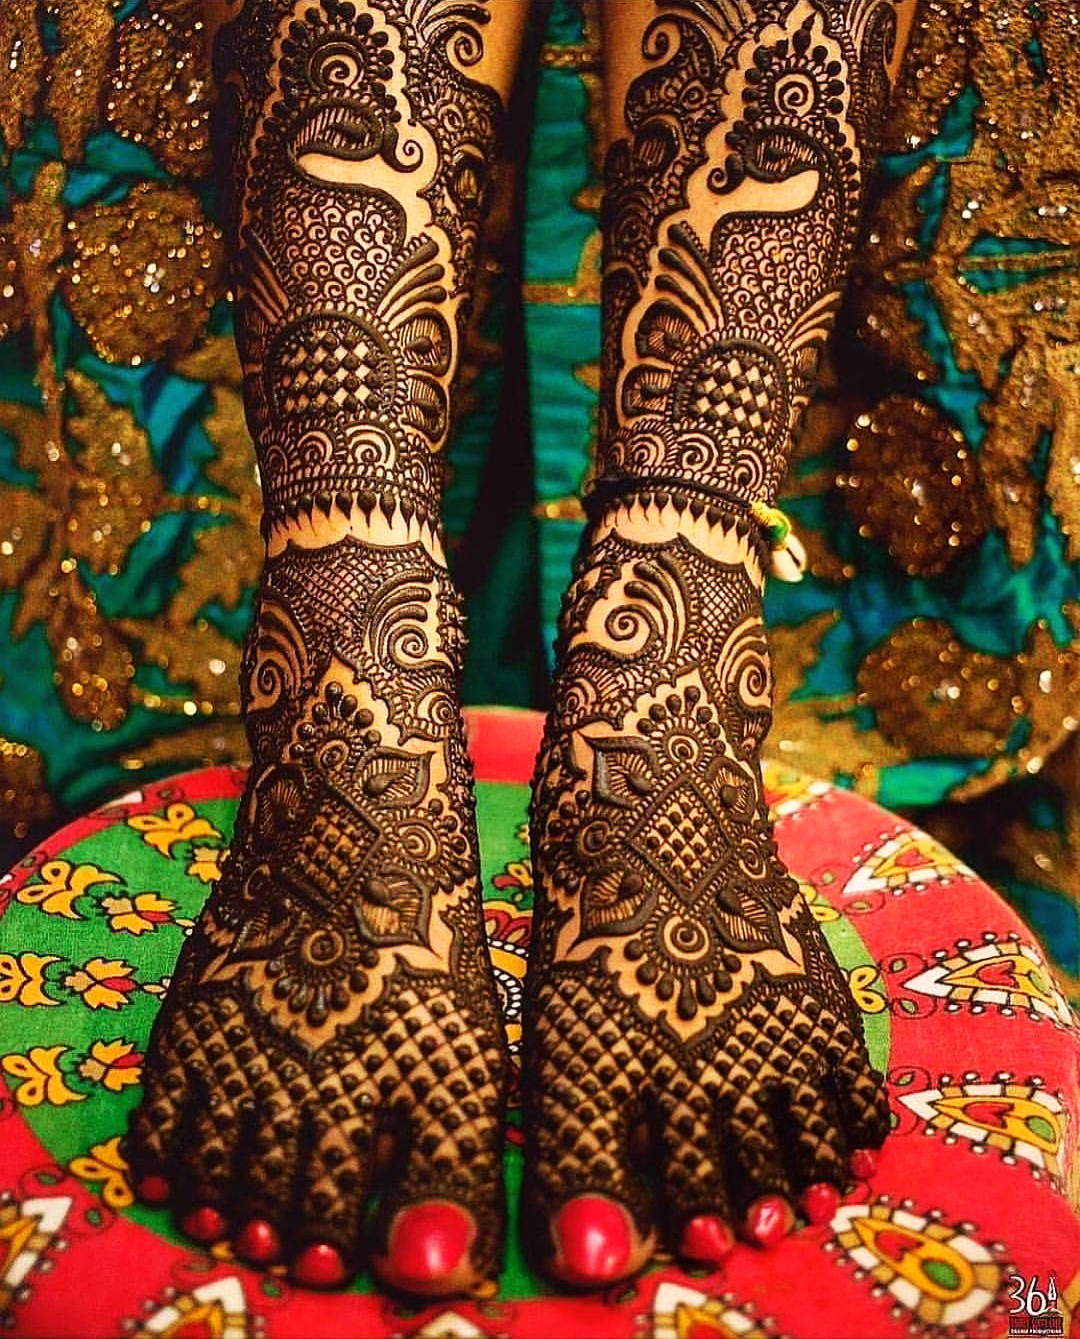 पैरों की सुन्दरता बढाएगी मेहंदी की ये डिज़ाइन, जरूर आजमाकर देखें -  lifeberrys.com हिंदी